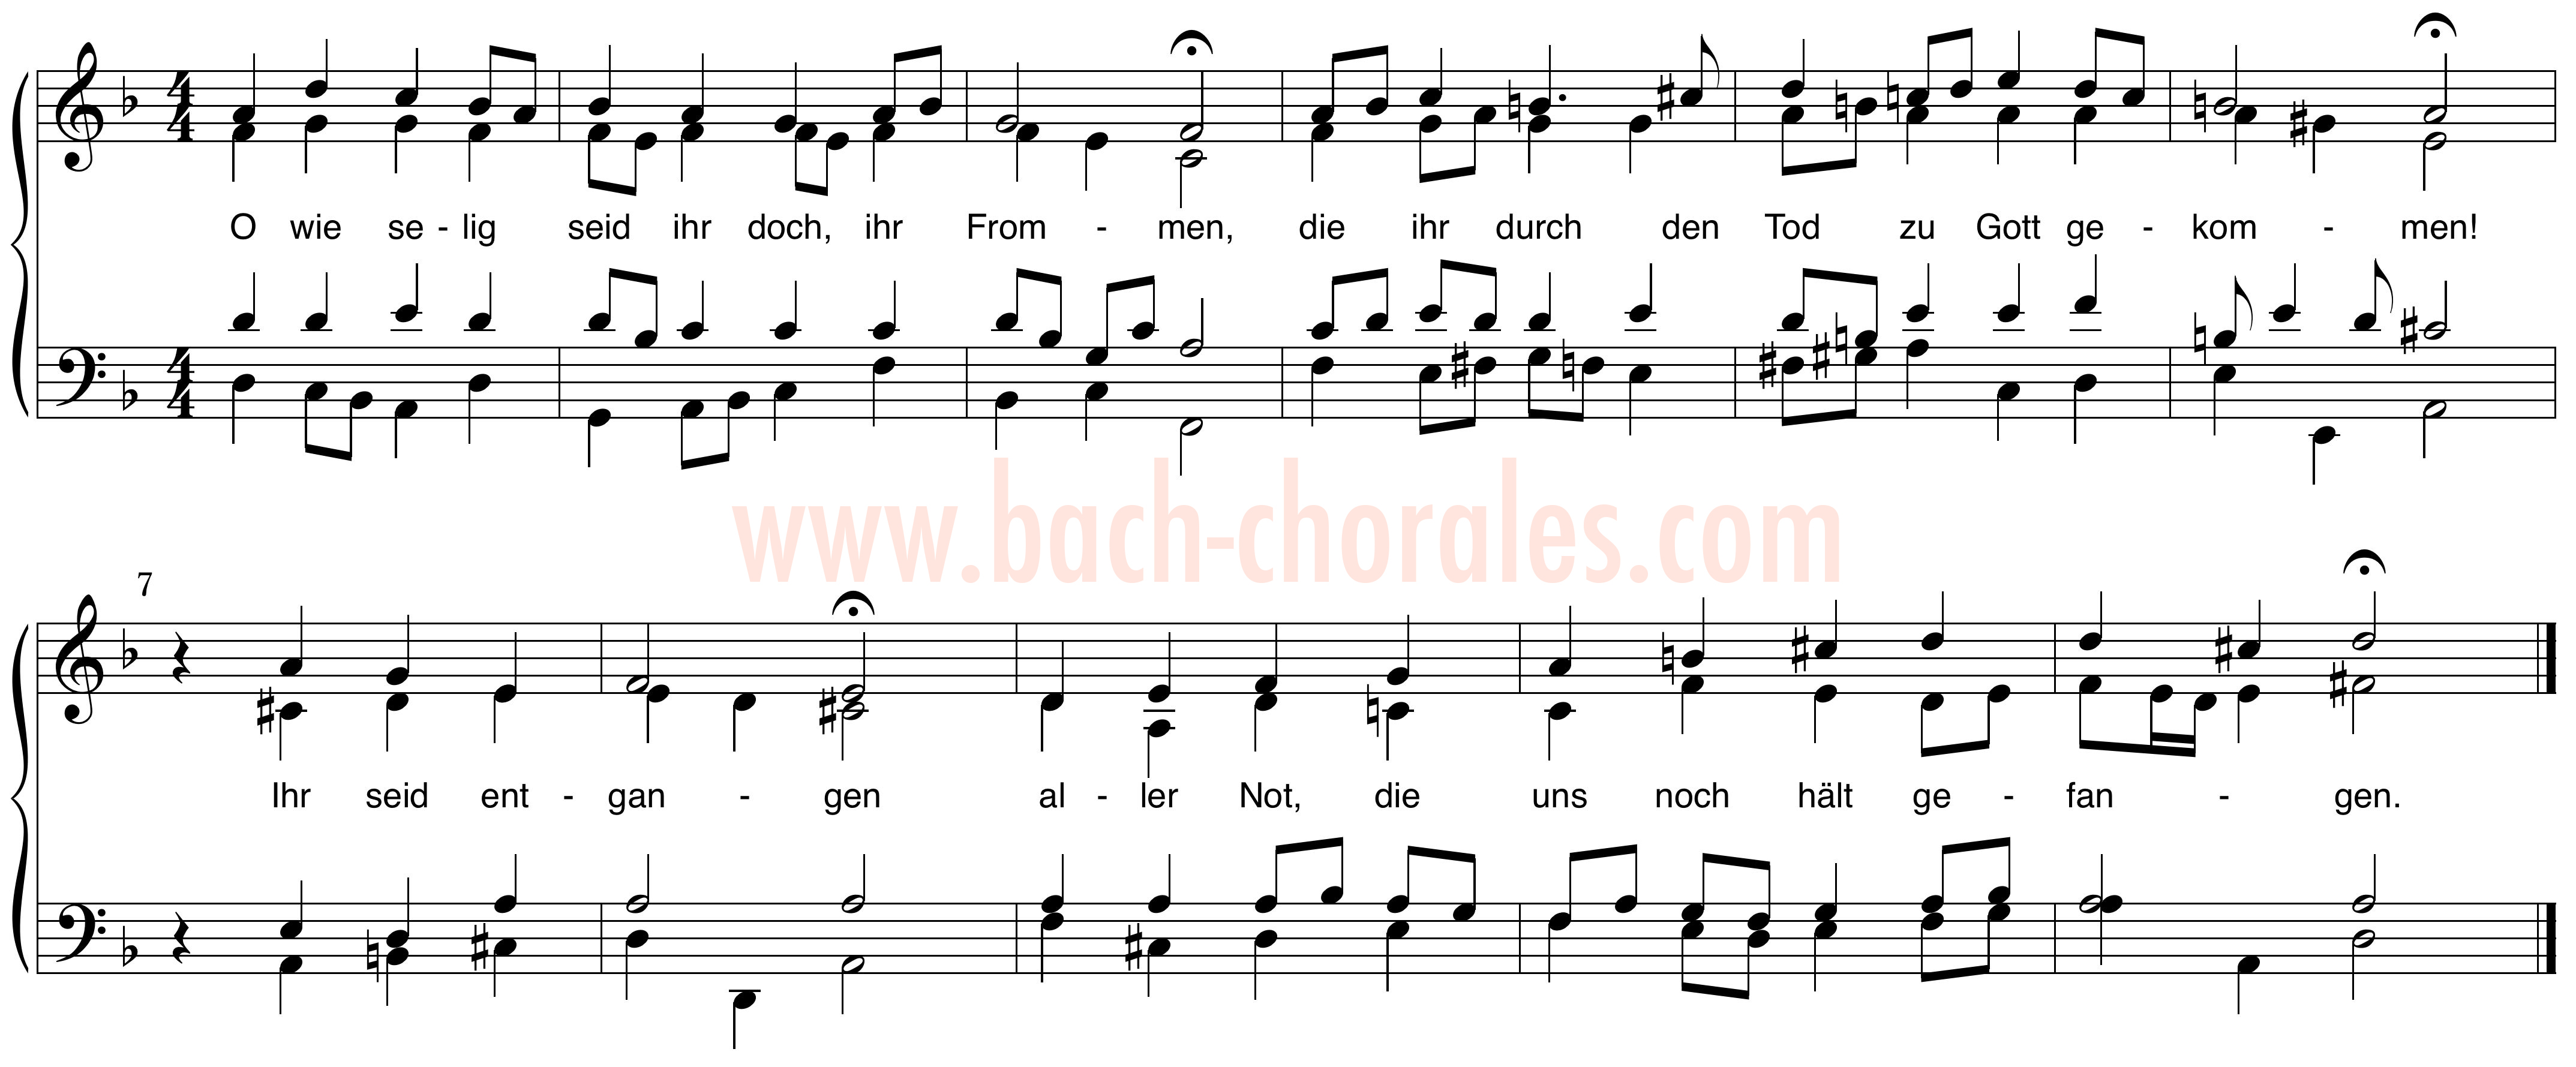 notenbeeld BWV 405 op https://www.bach-chorales.com/